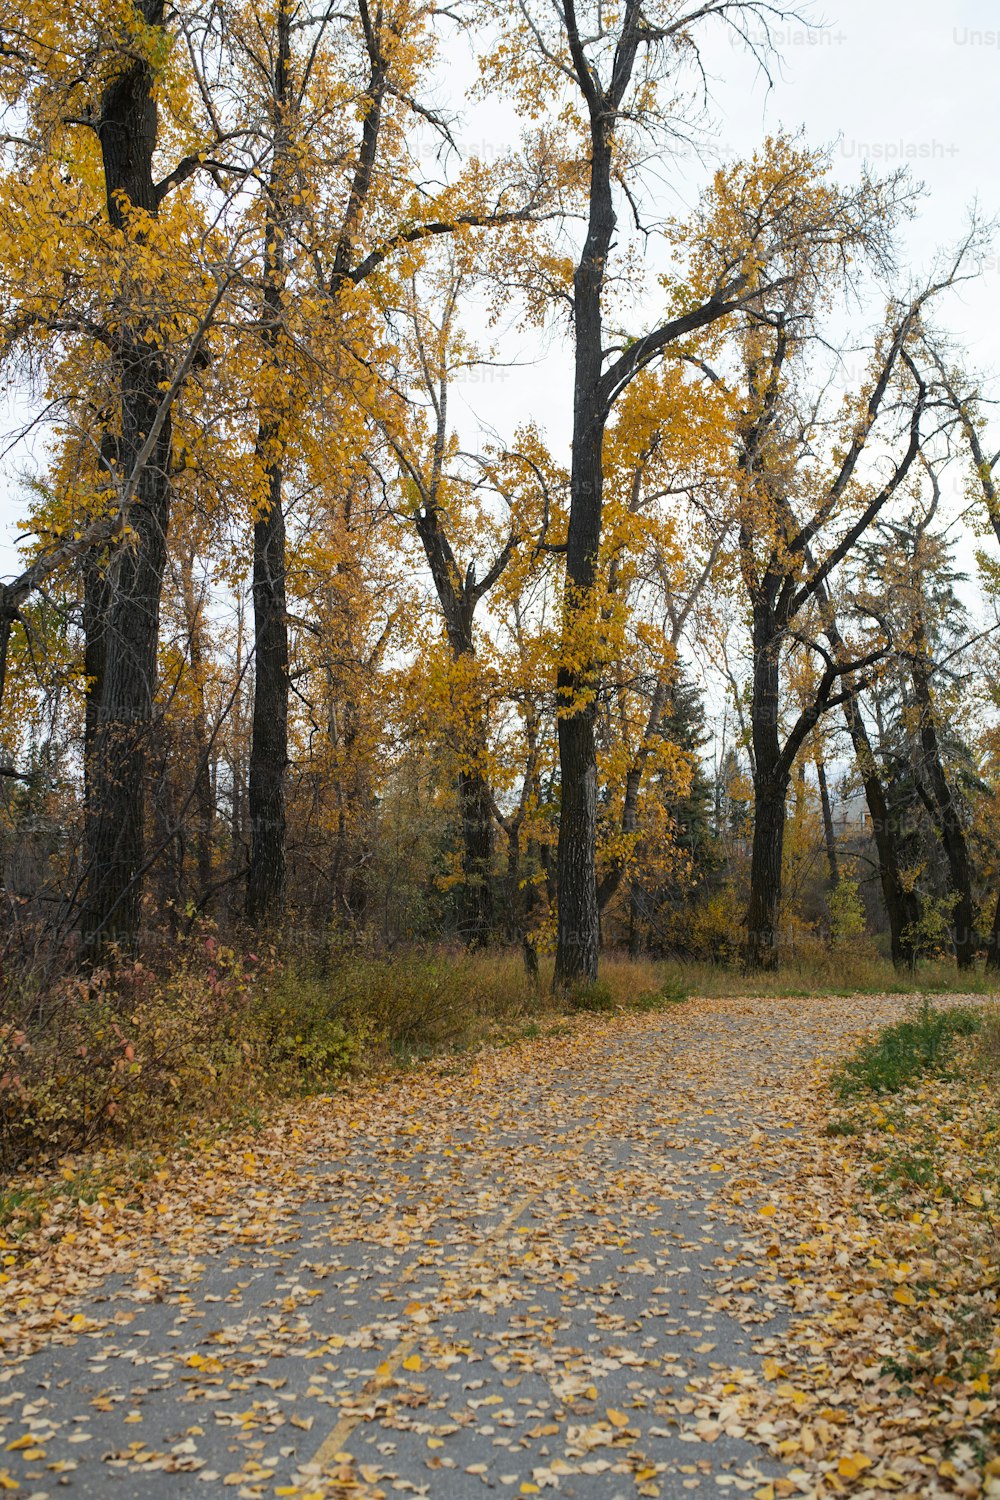 Una strada sterrata circondata da alberi dalle foglie gialle